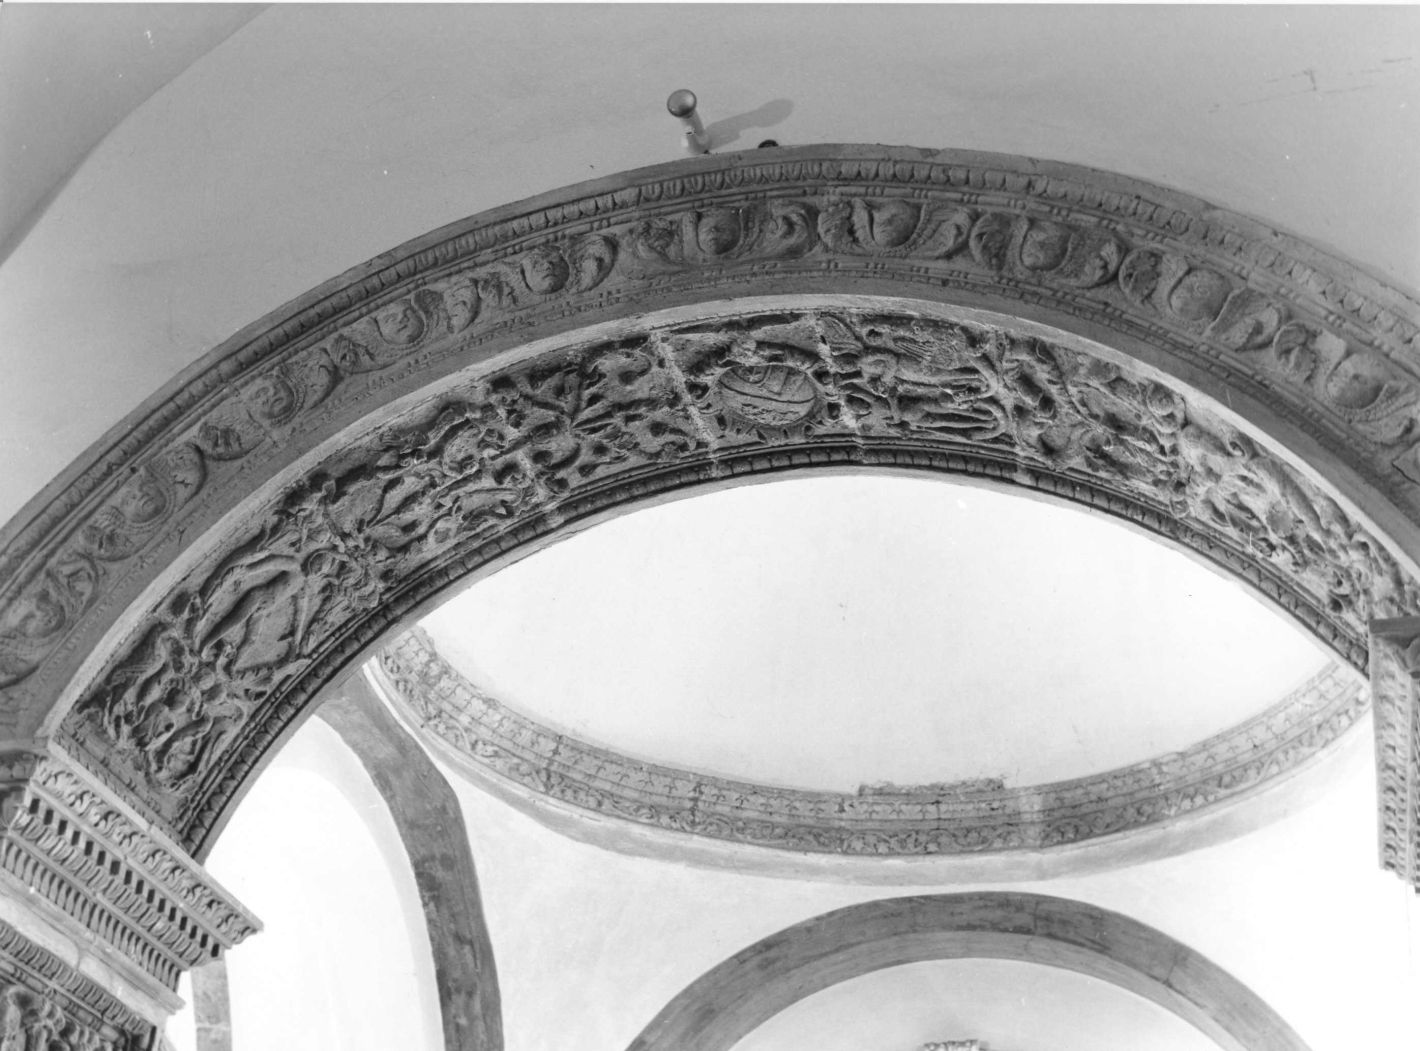 motivi decorativi a grottesche (rilievo) - bottega campana (inizio sec. XVI)